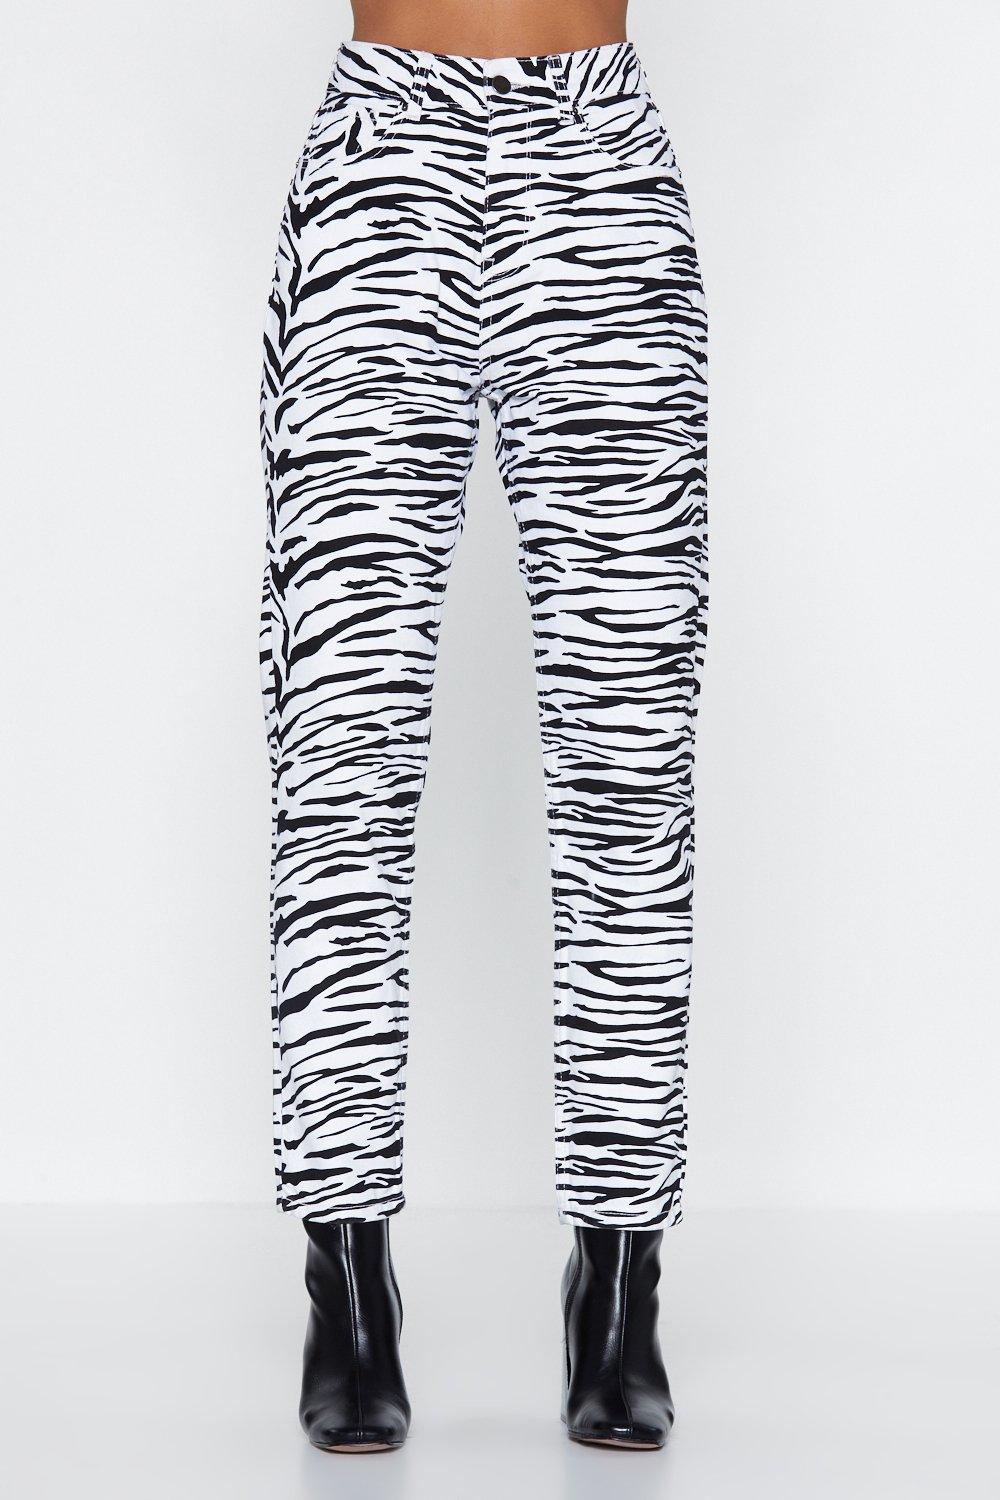 zebra jeans